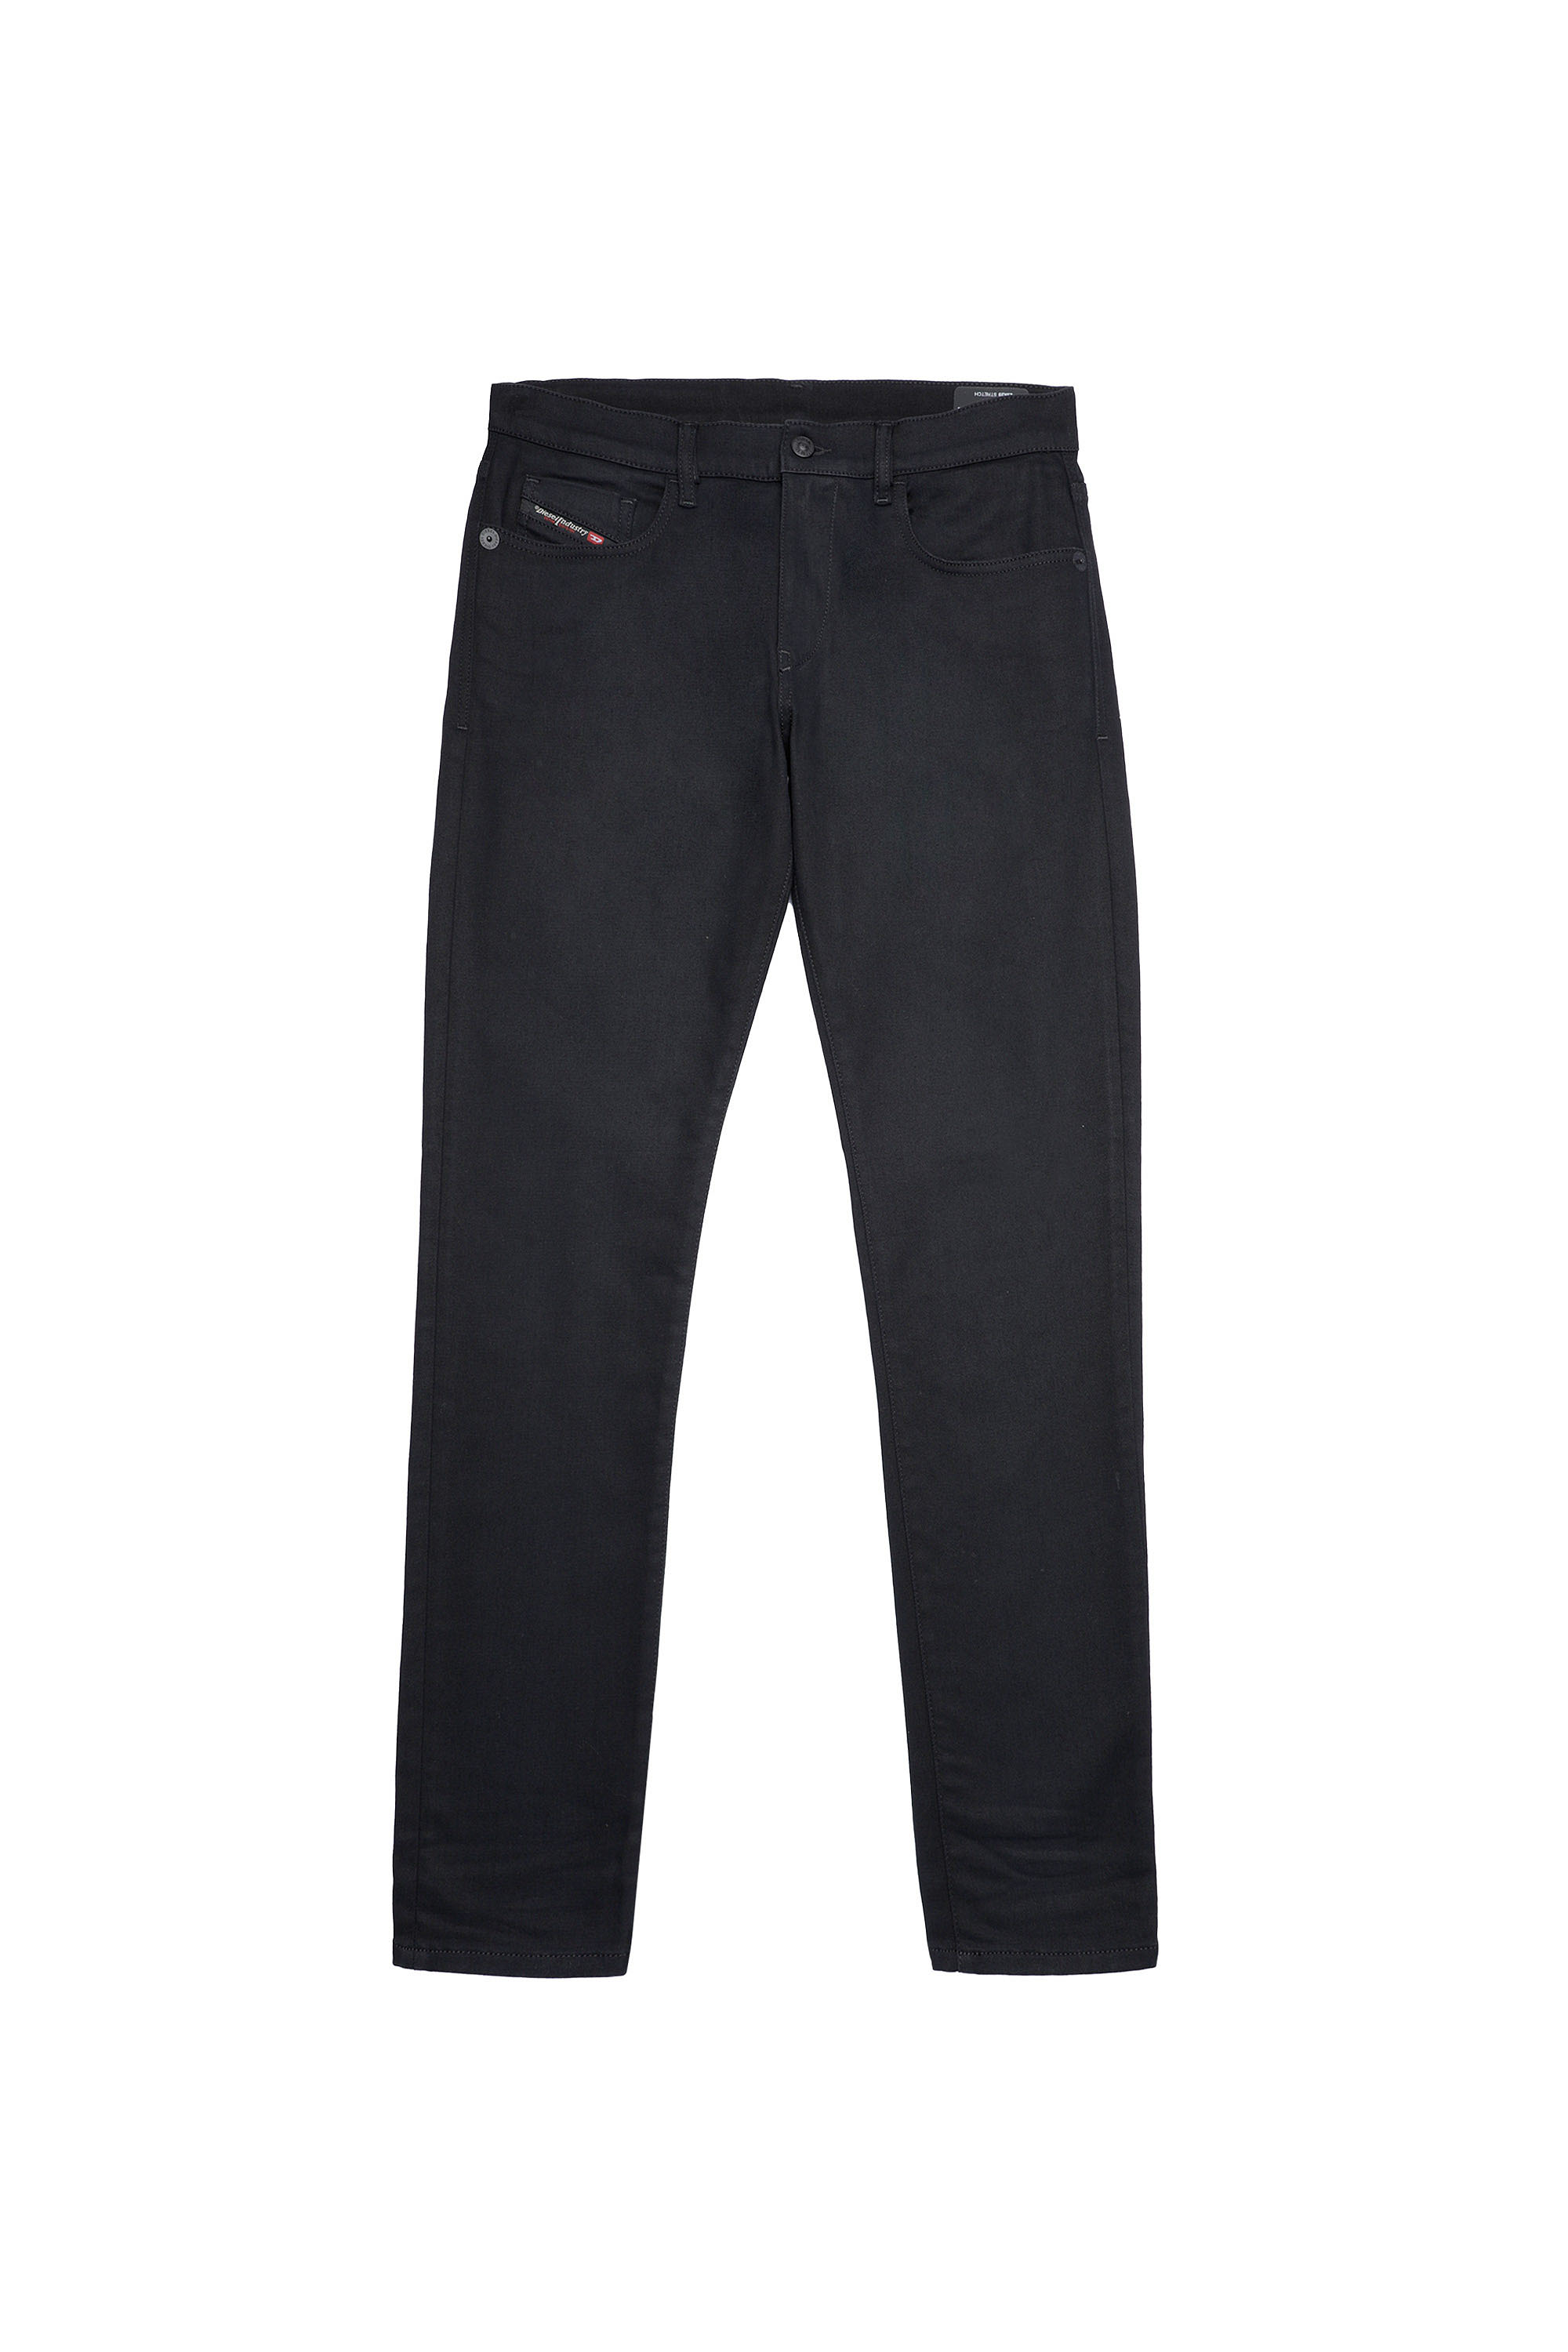 Diesel - D-Strukt JoggJeans® Z9A29 Slim, Black/Dark Grey - Image 6